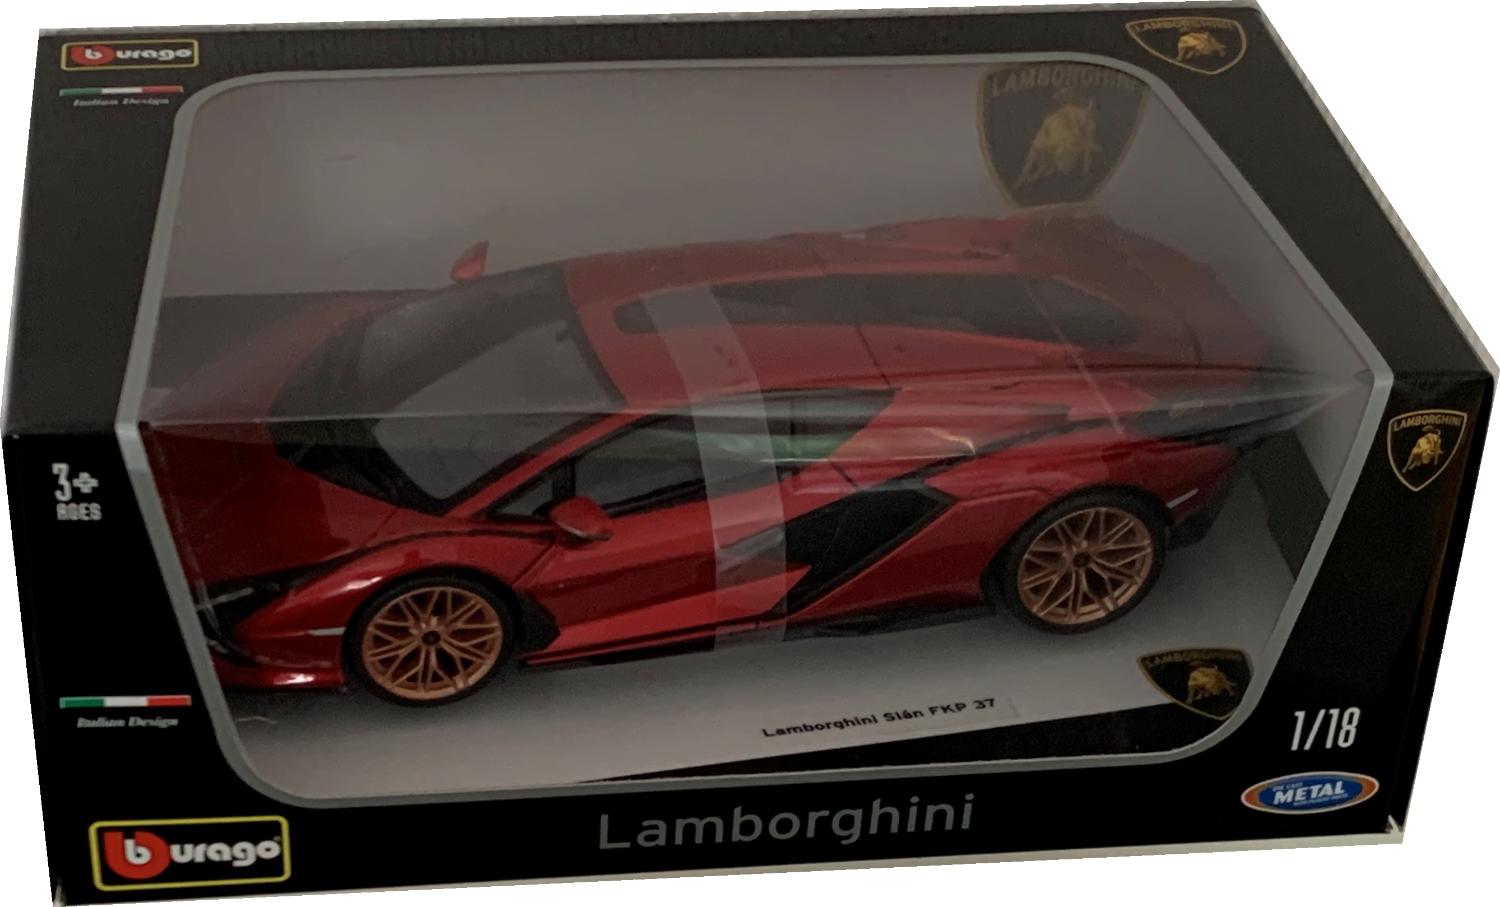 Lamborghini Sian FKP 37 2019 in metallic red 1:18 scale model from Bburago